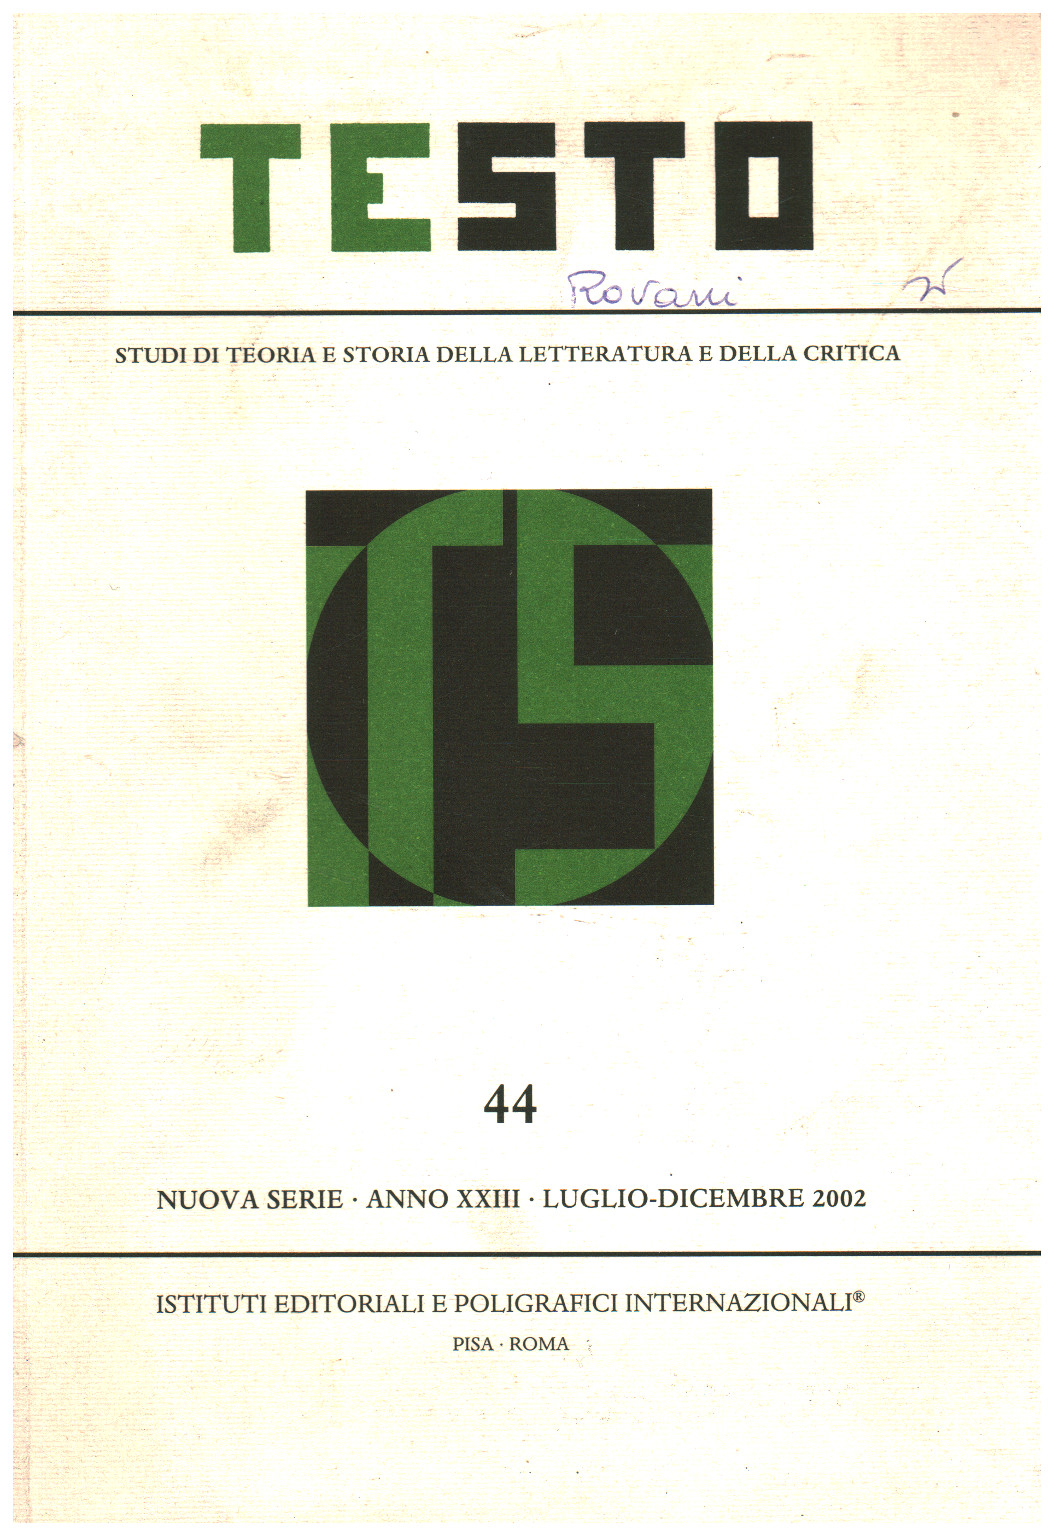 Text,44, Jahr XXIII, Juli-Dezember,2002, AA.VV